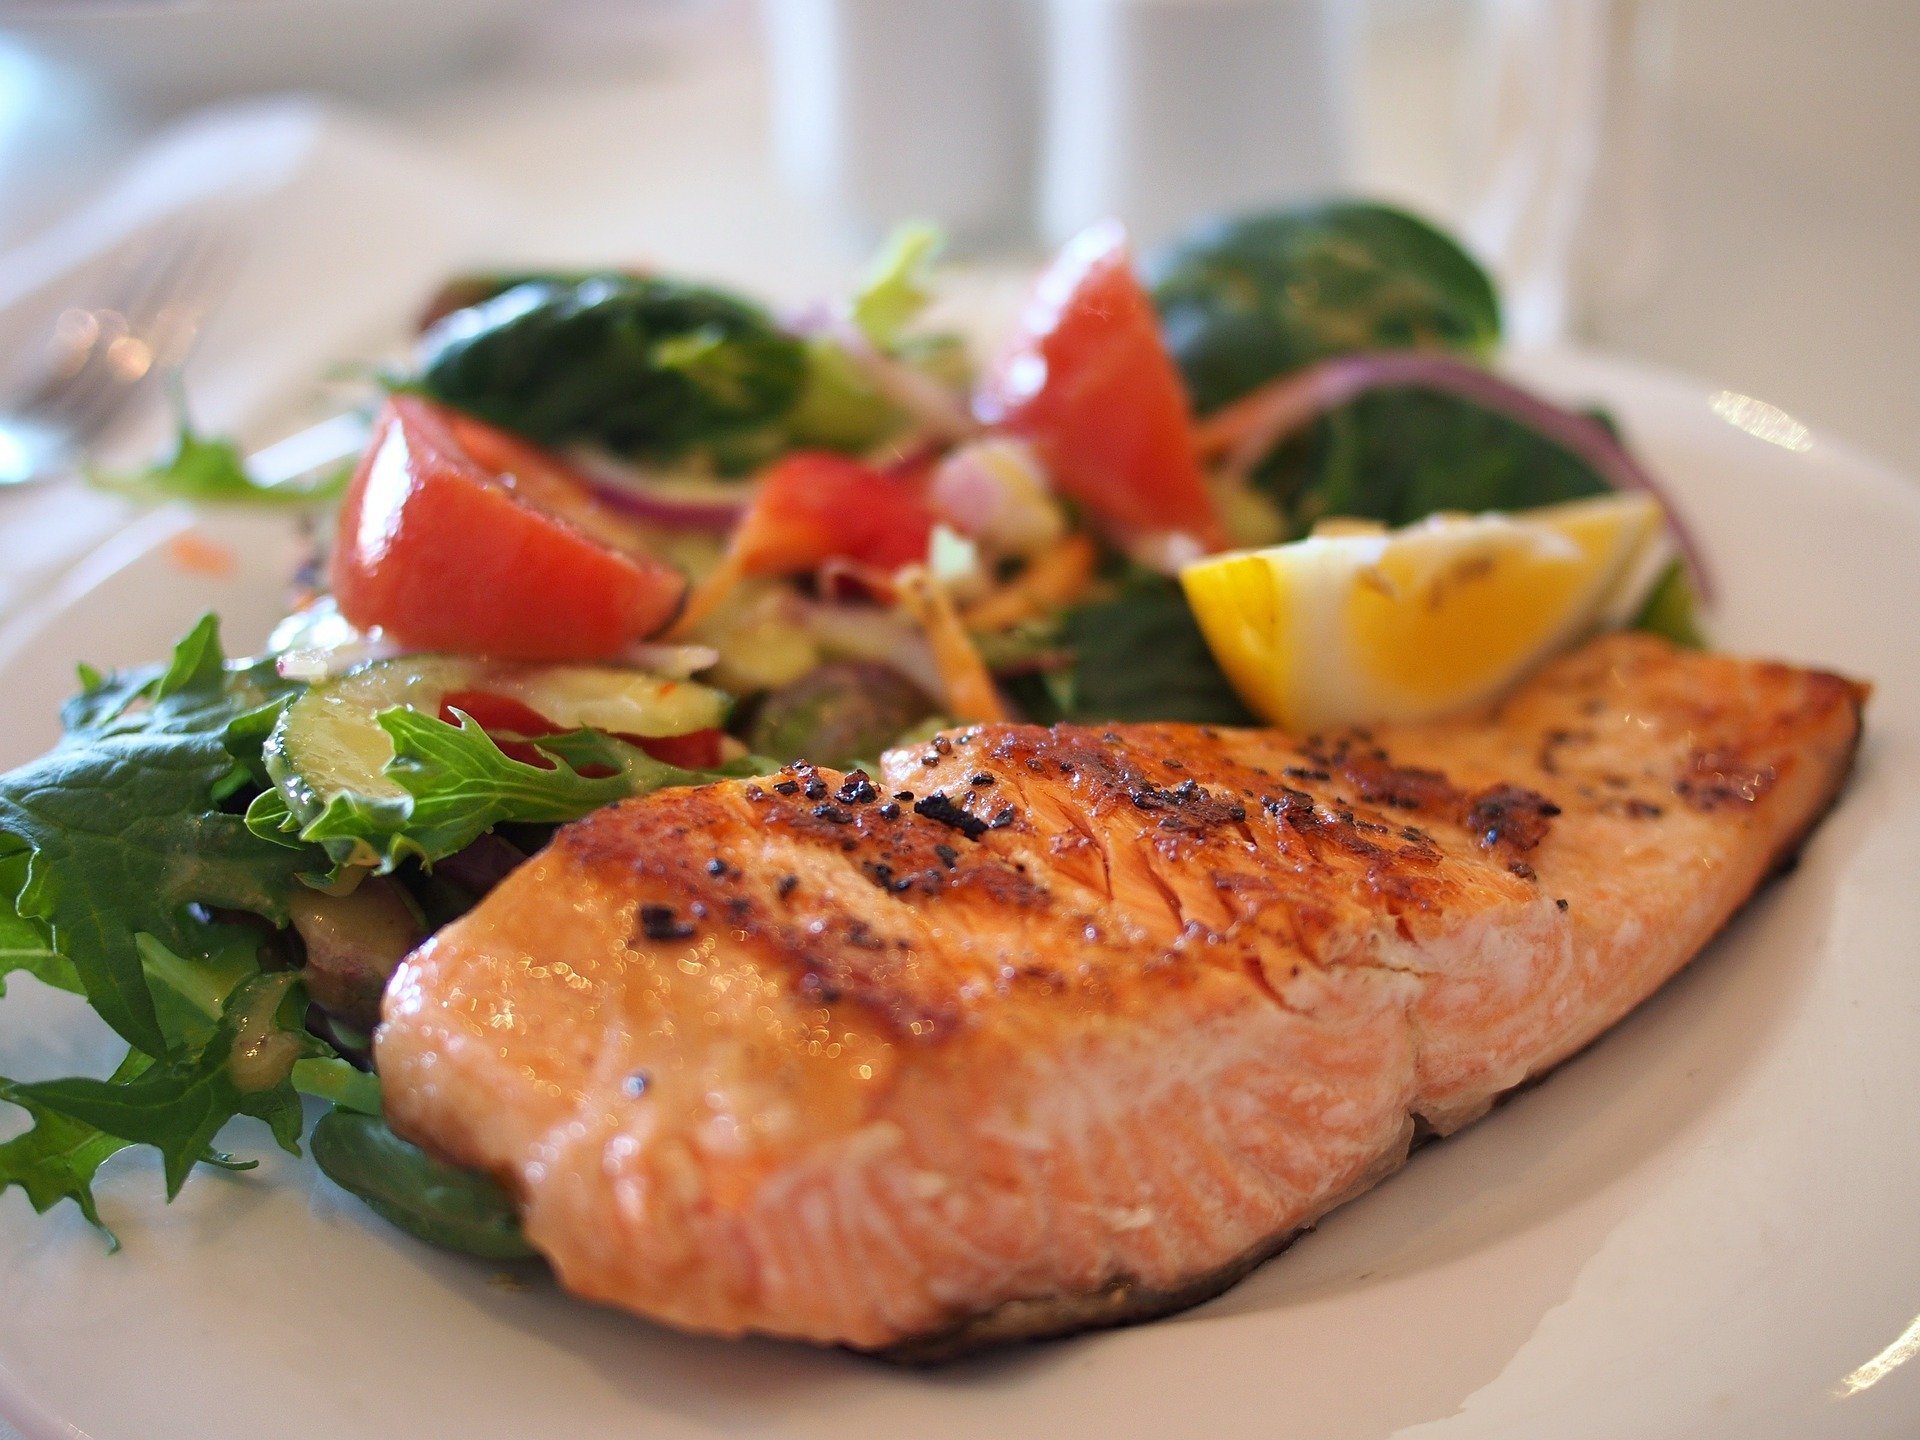 Stravu bohatú na horčík a omega-3 mastné kyseliny, ako napríklad ryby, avokádo a listová zelenina s tmavými listami